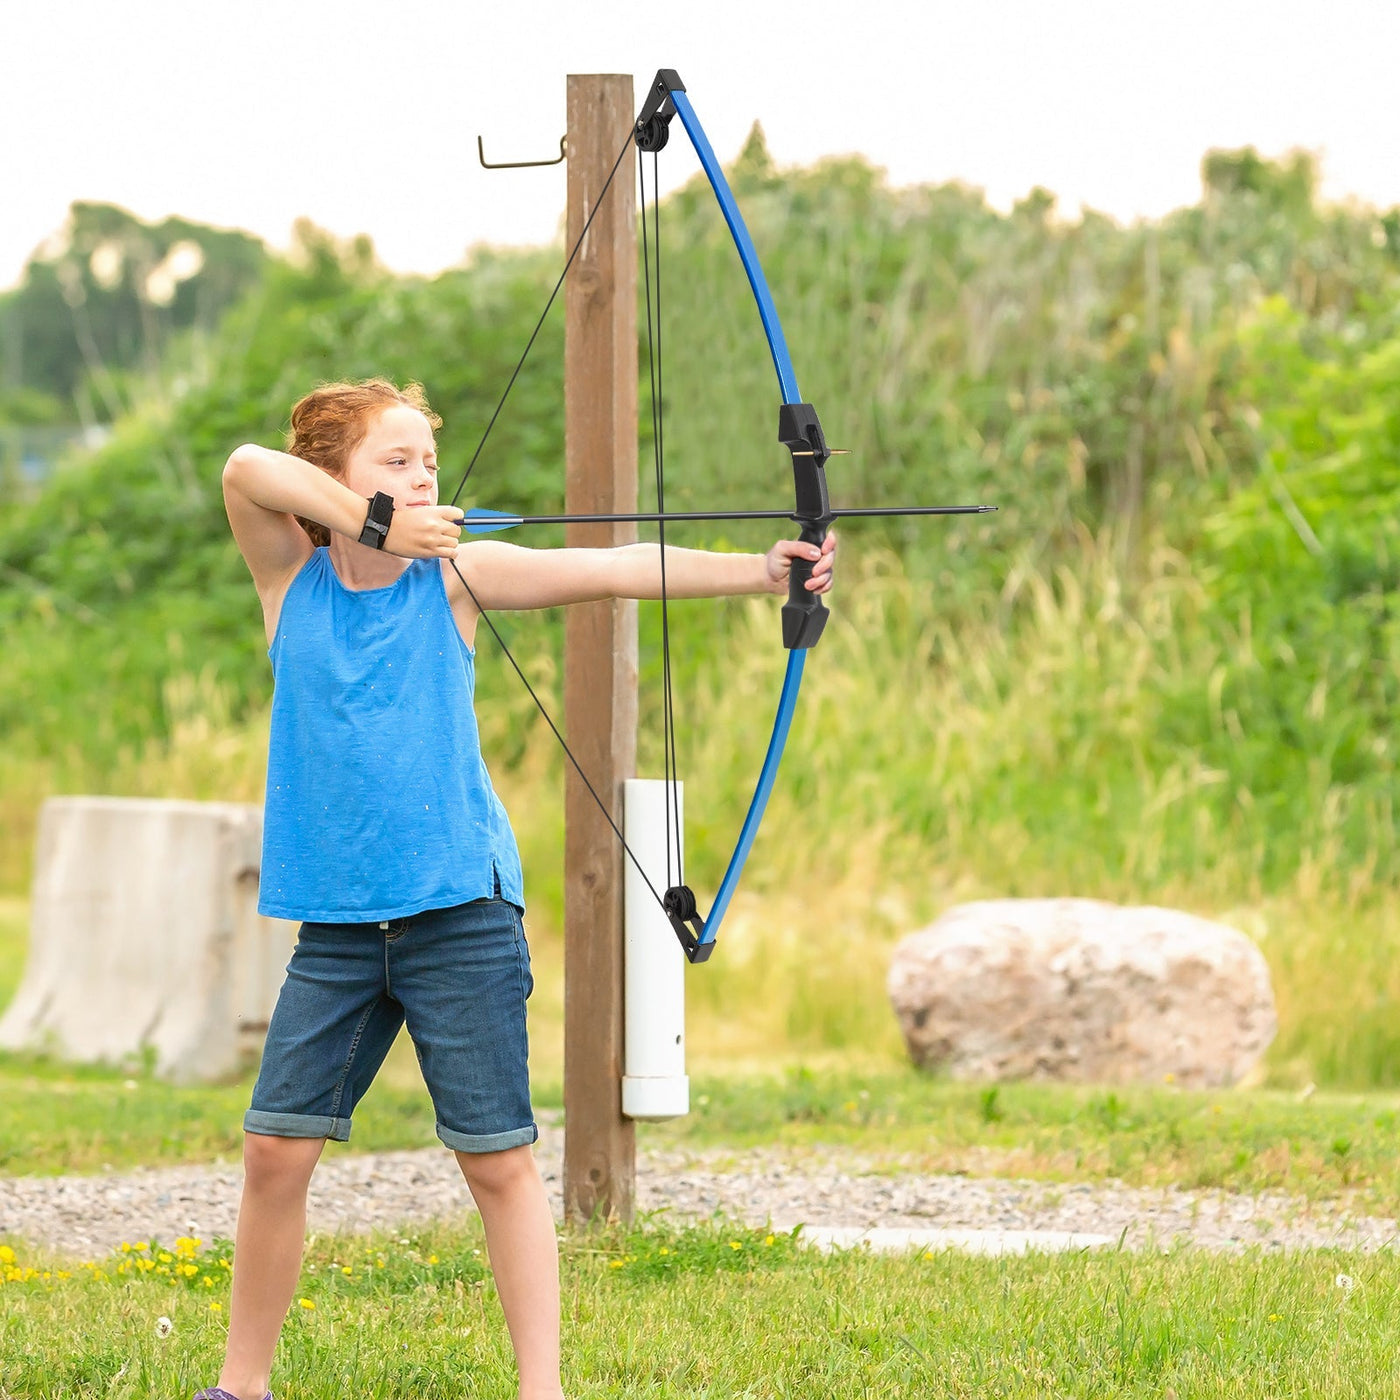 M021 Blue 35" Compound Bow& 8 Arrows Set, for Kids, Ages 6-12